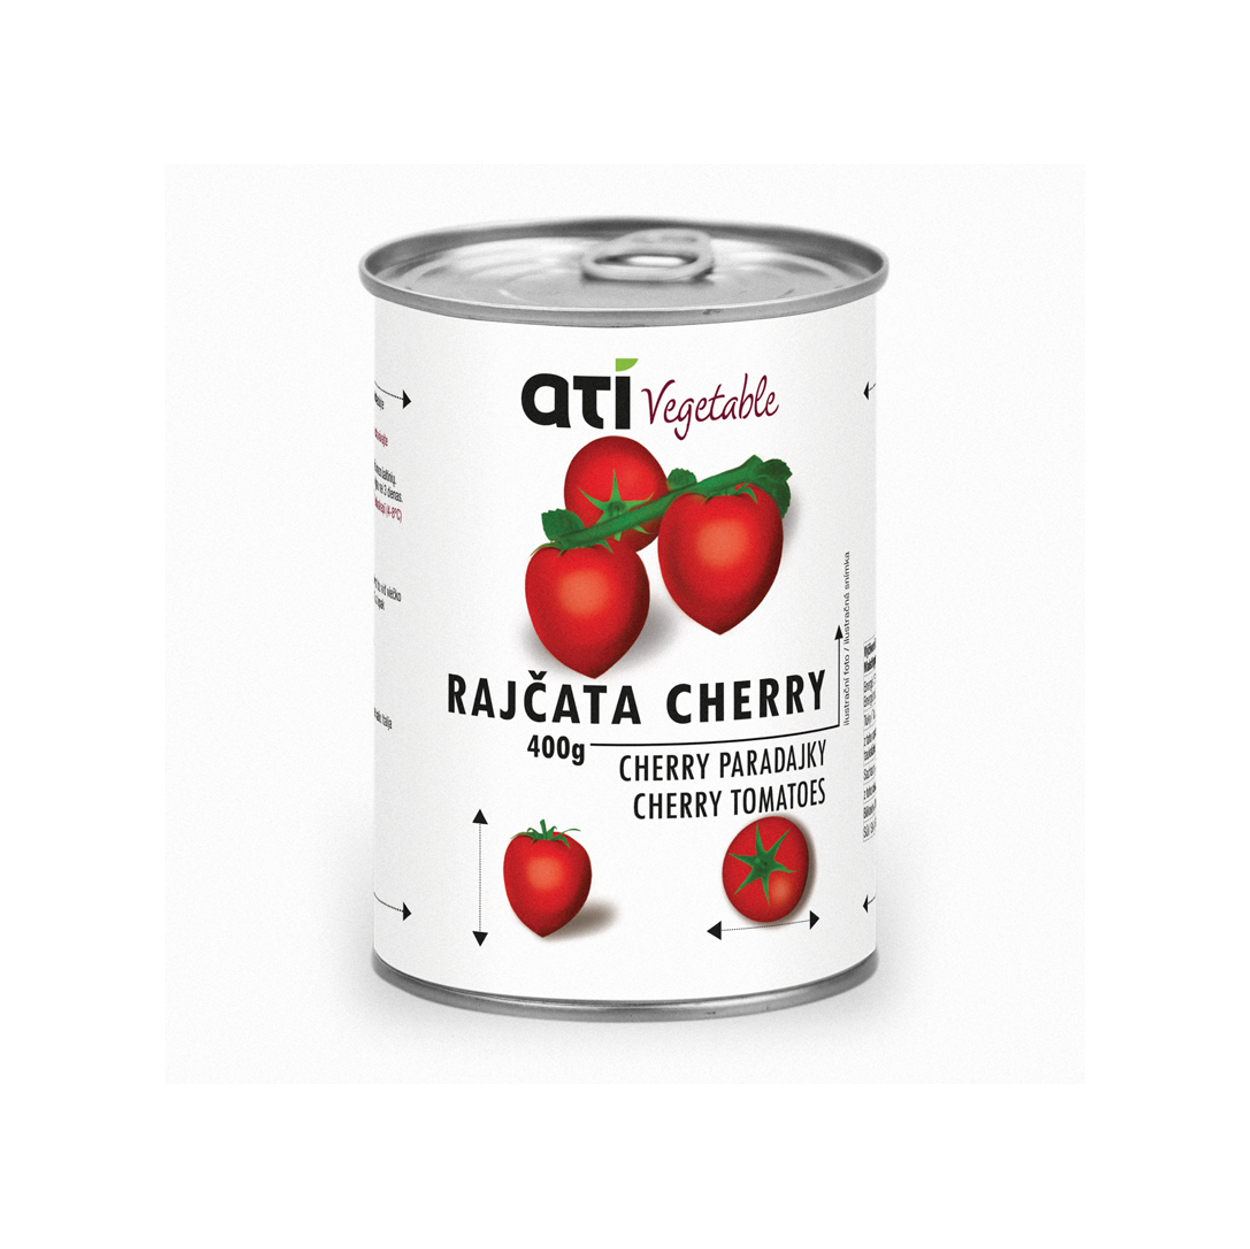 ATI Vegetable cherry paradajky